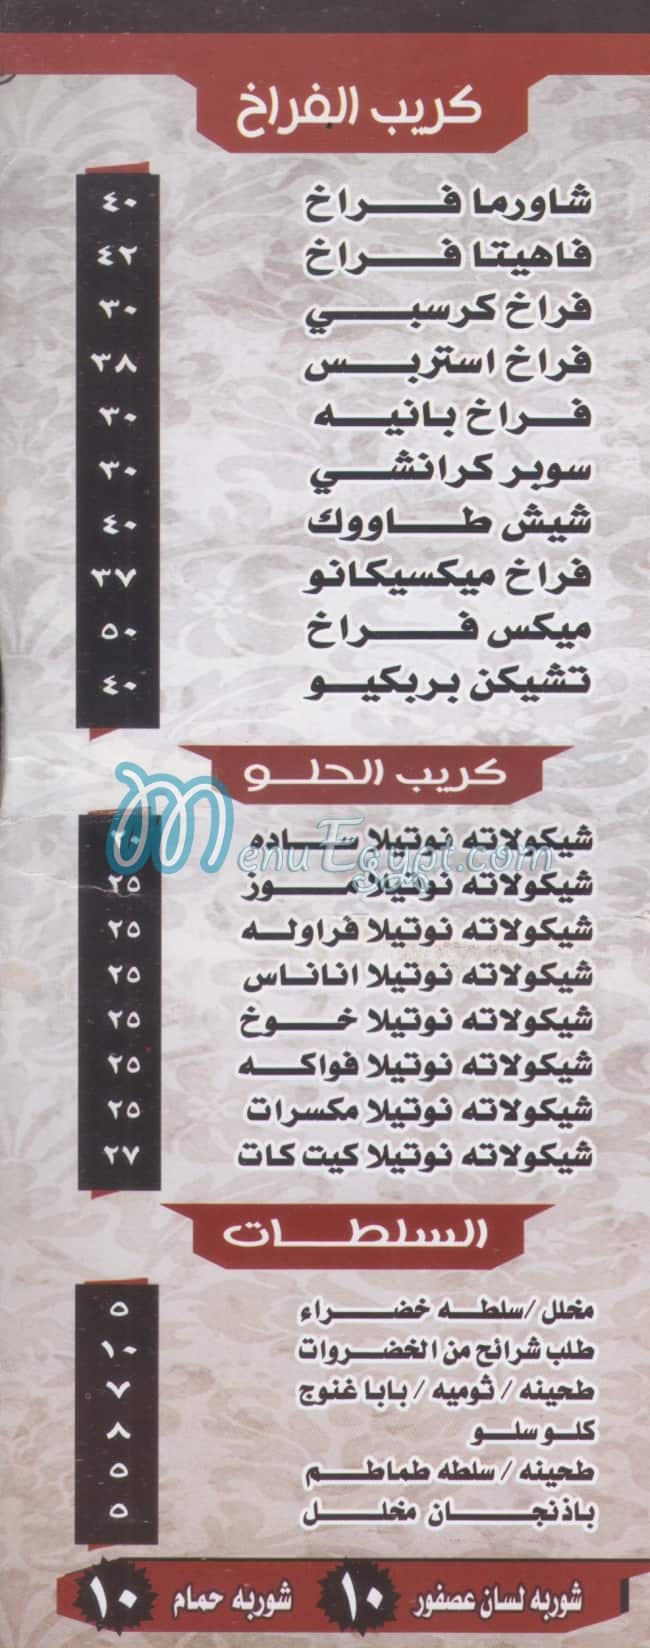 Haty Al Medan menu Egypt